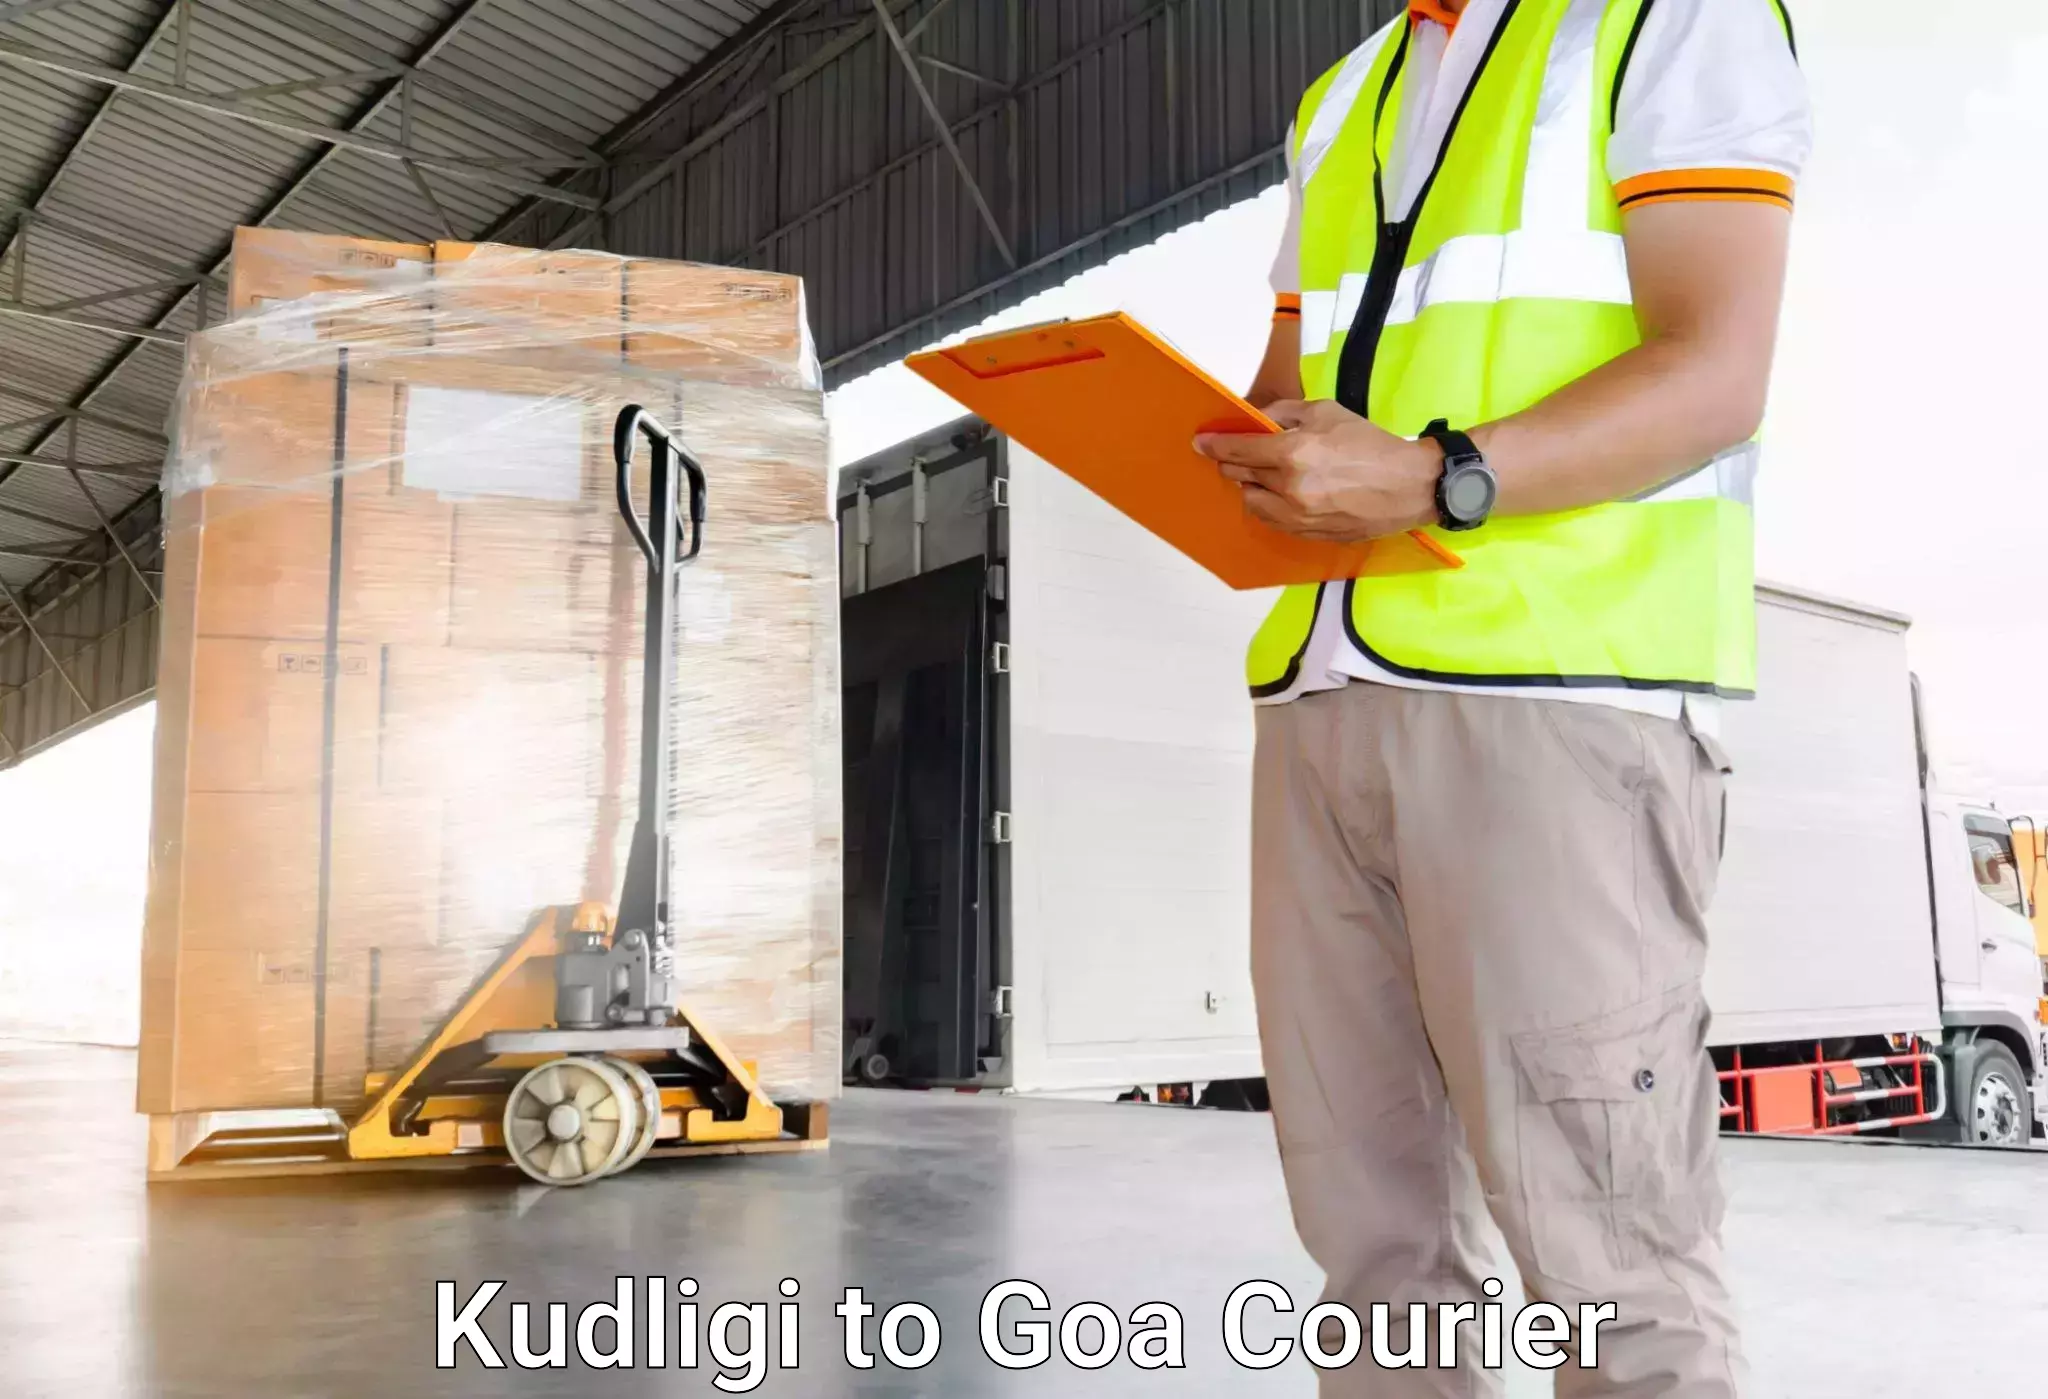 Luggage shipment specialists Kudligi to Goa